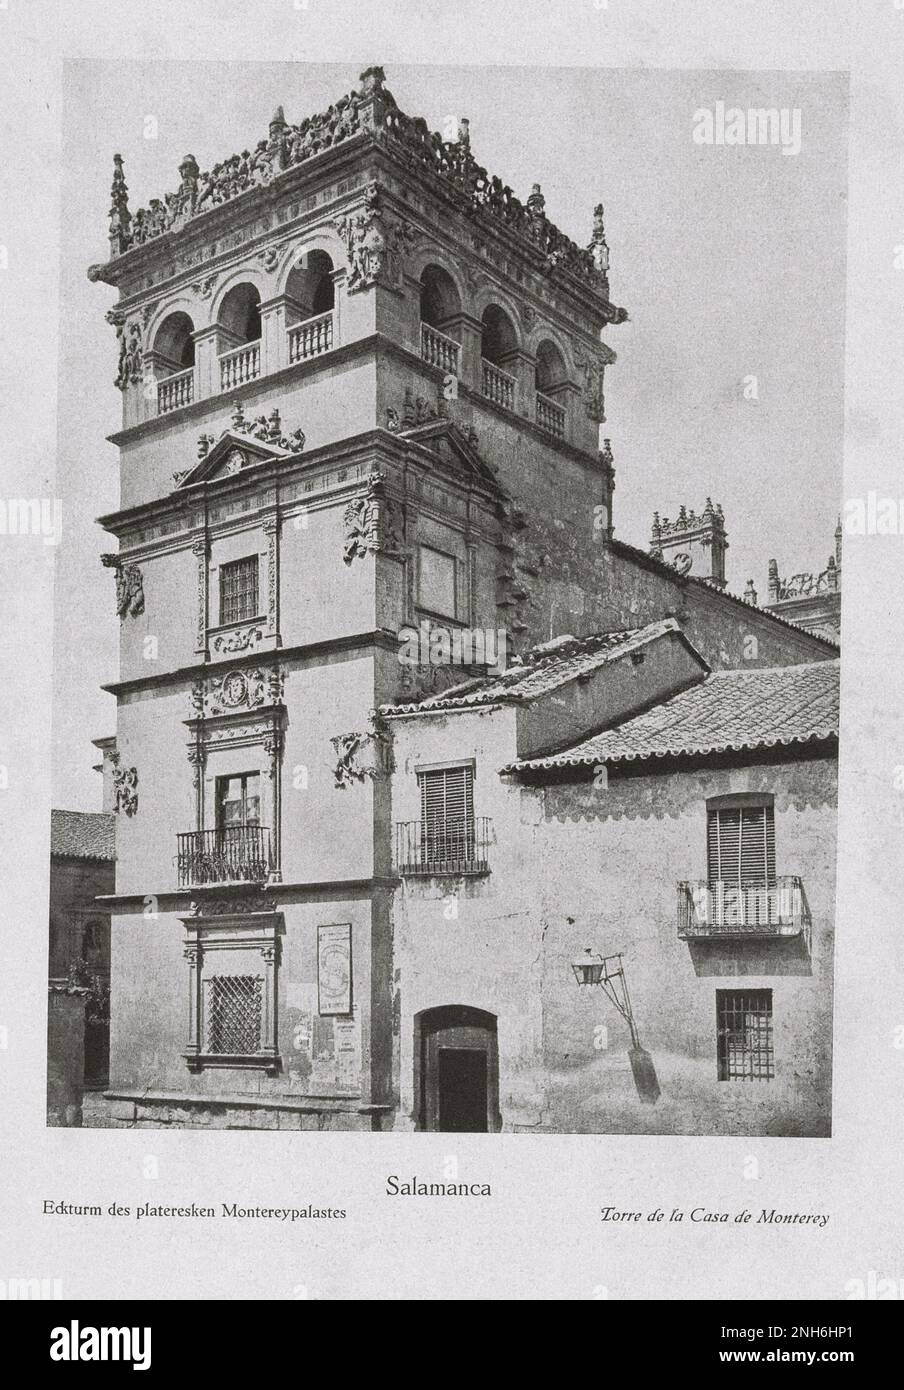 Architecture de la vieille Espagne. Photo d'époque de la Tour de la Maison de Monterey (Torre de la Casa de Monterey) à Salamanque Banque D'Images